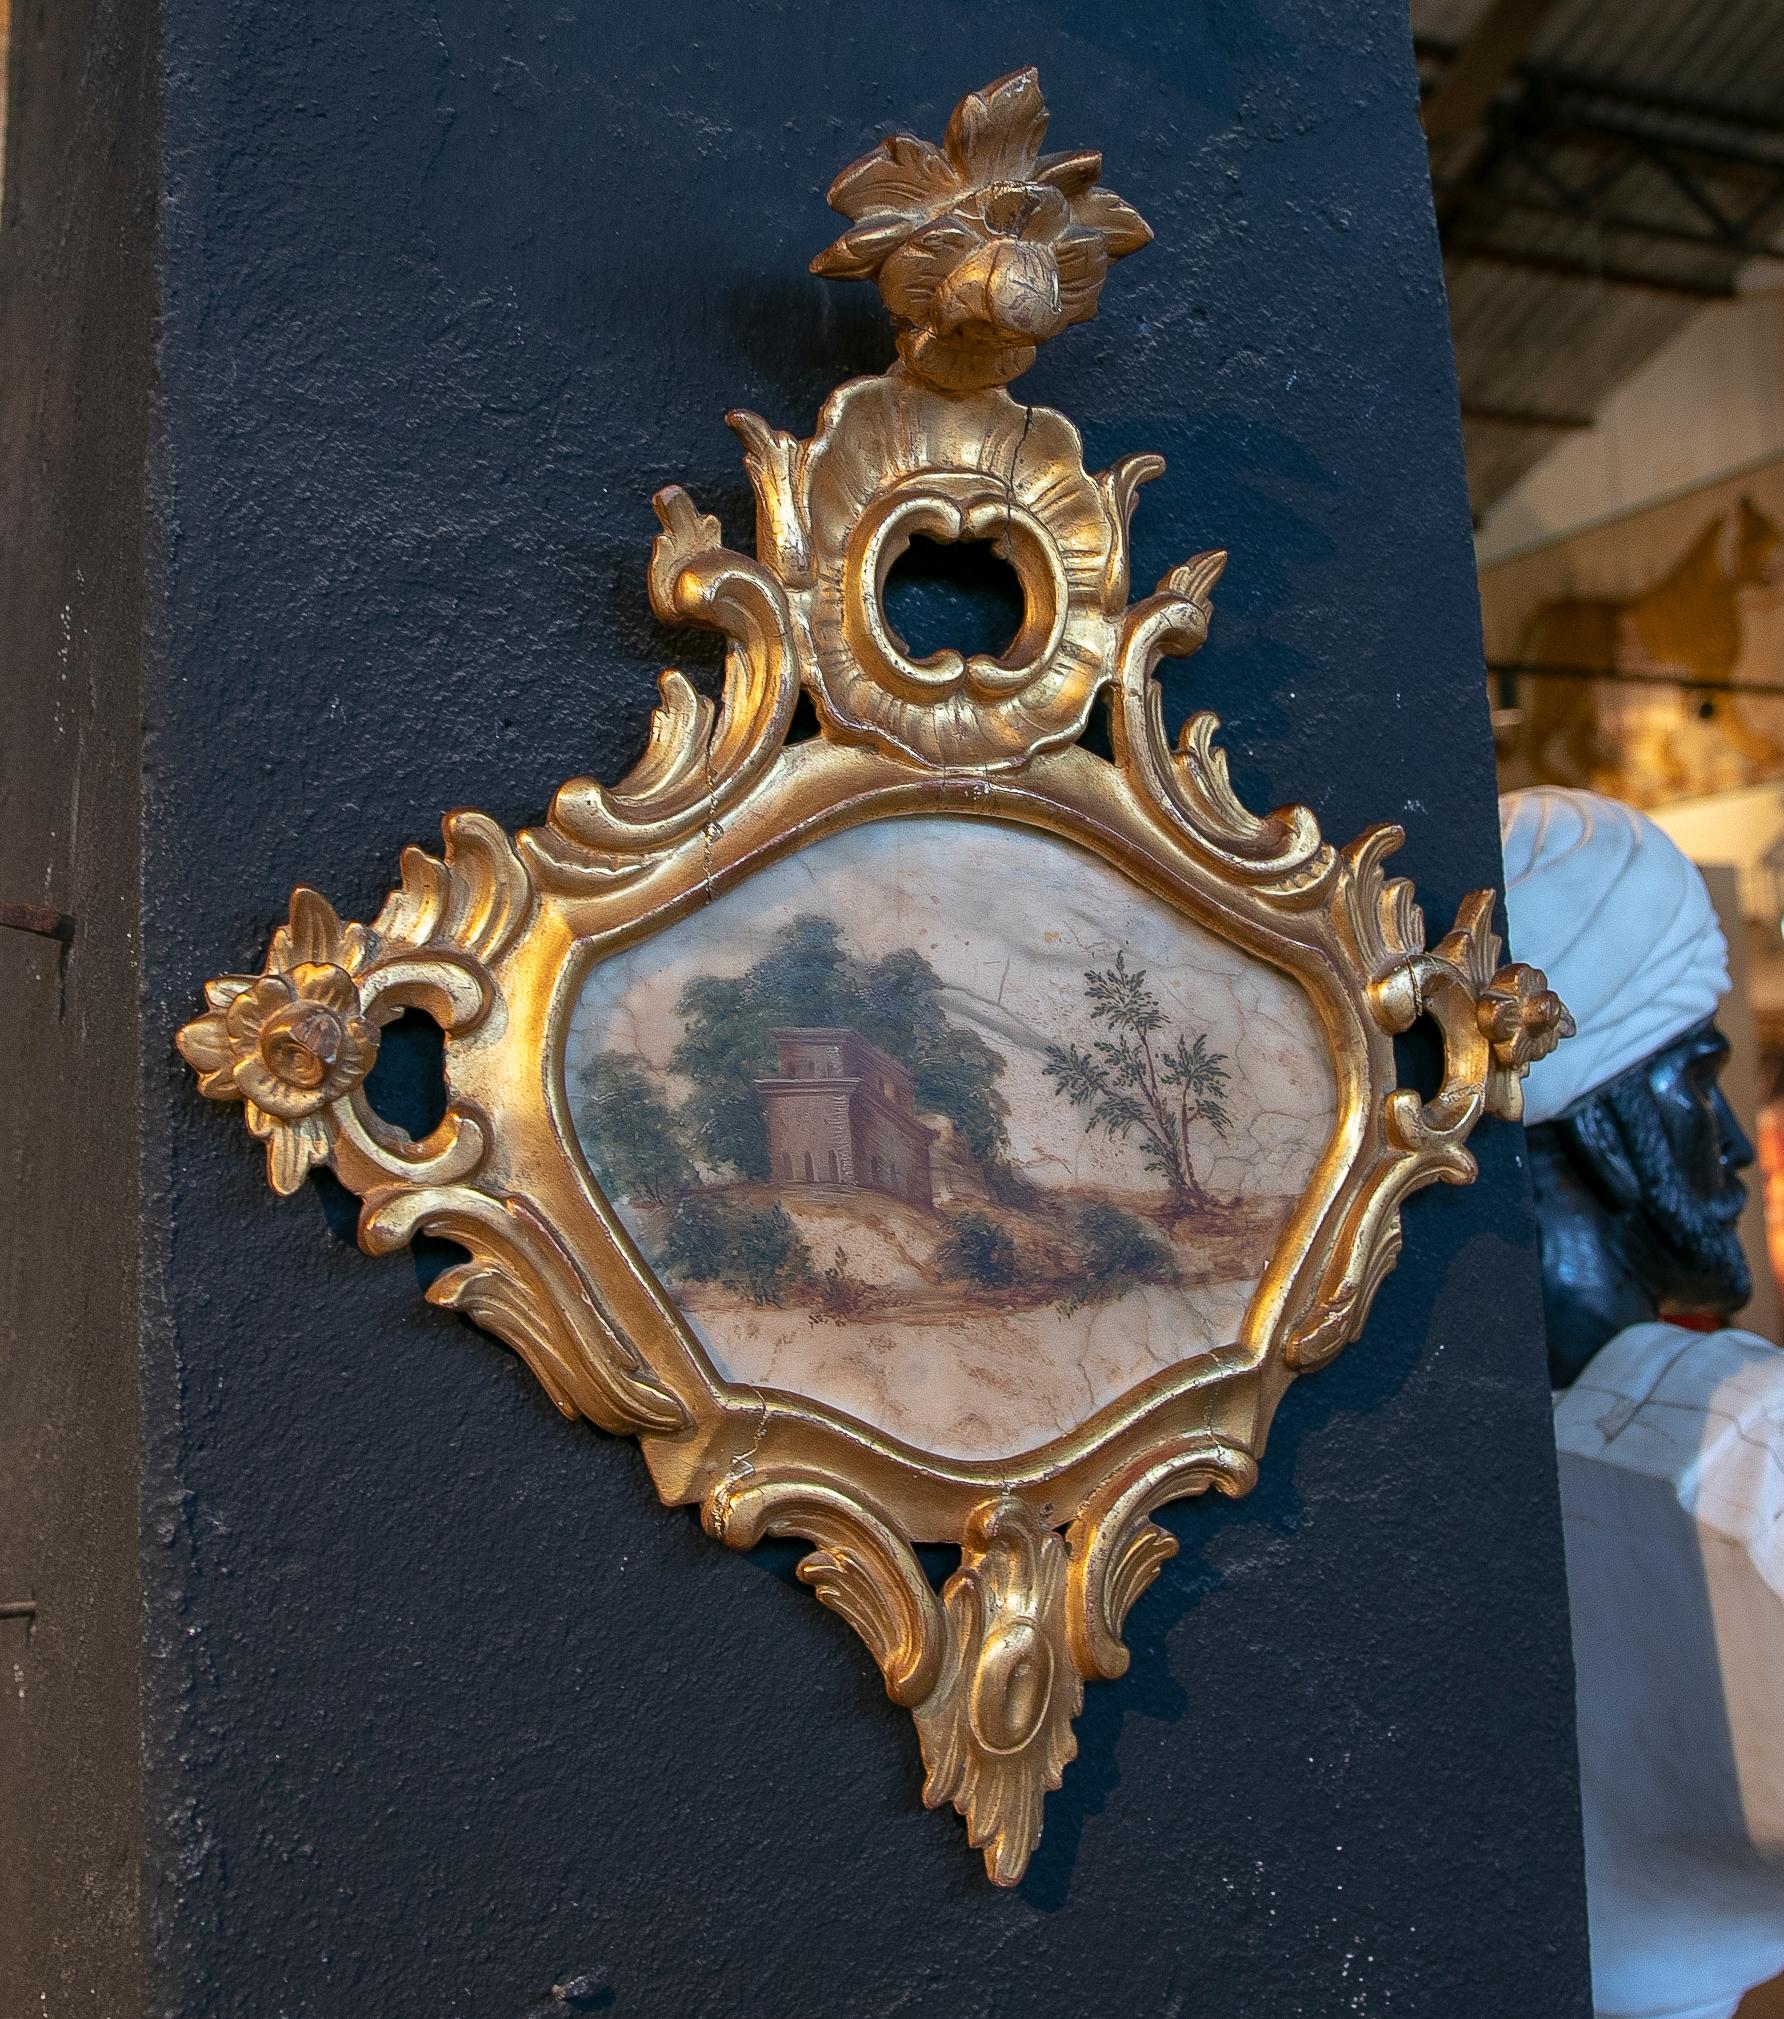 Tableau de paysage italien du 18e siècle peint à la main sur albâtre et encadré.